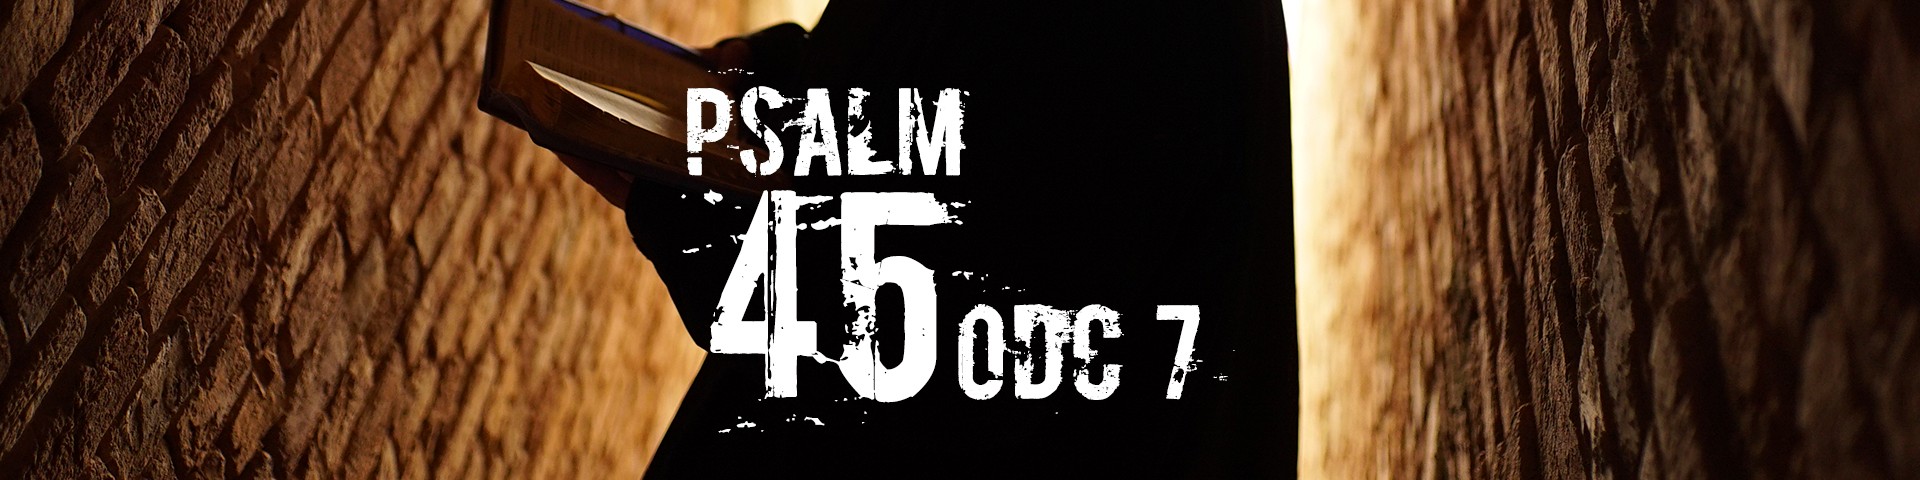 Rekolekcje Wielkopostne 2018 - "Psalm 45" ks. Artur Ważny - odc. 7